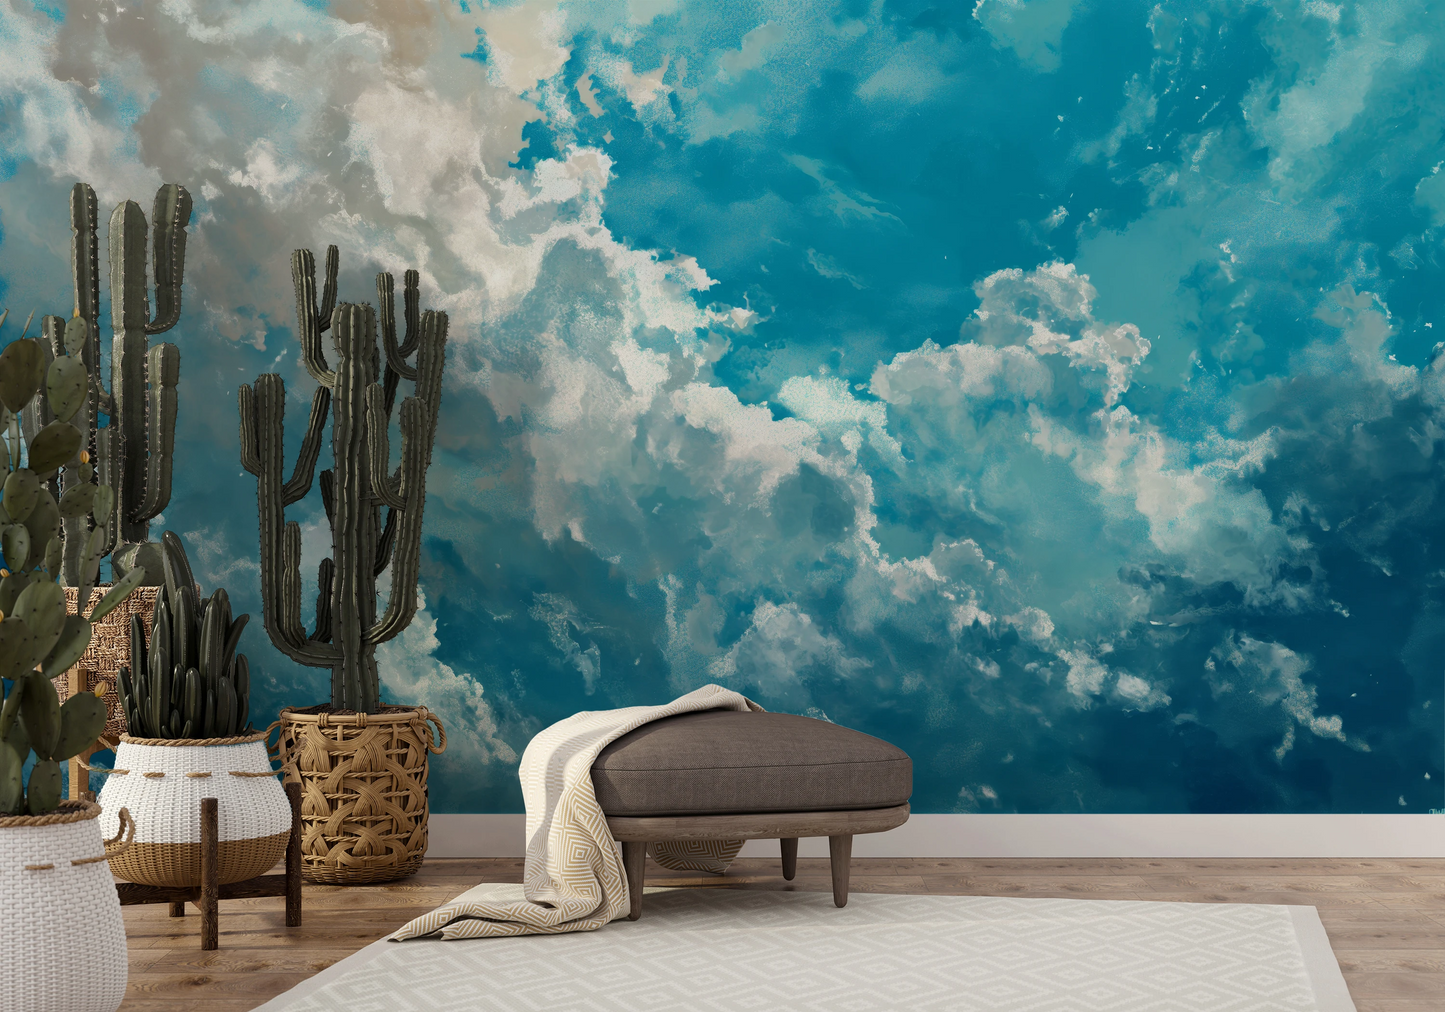 Fototapeta malowana o nazwie Azure Purity pokazana w aranżacji wnętrza.